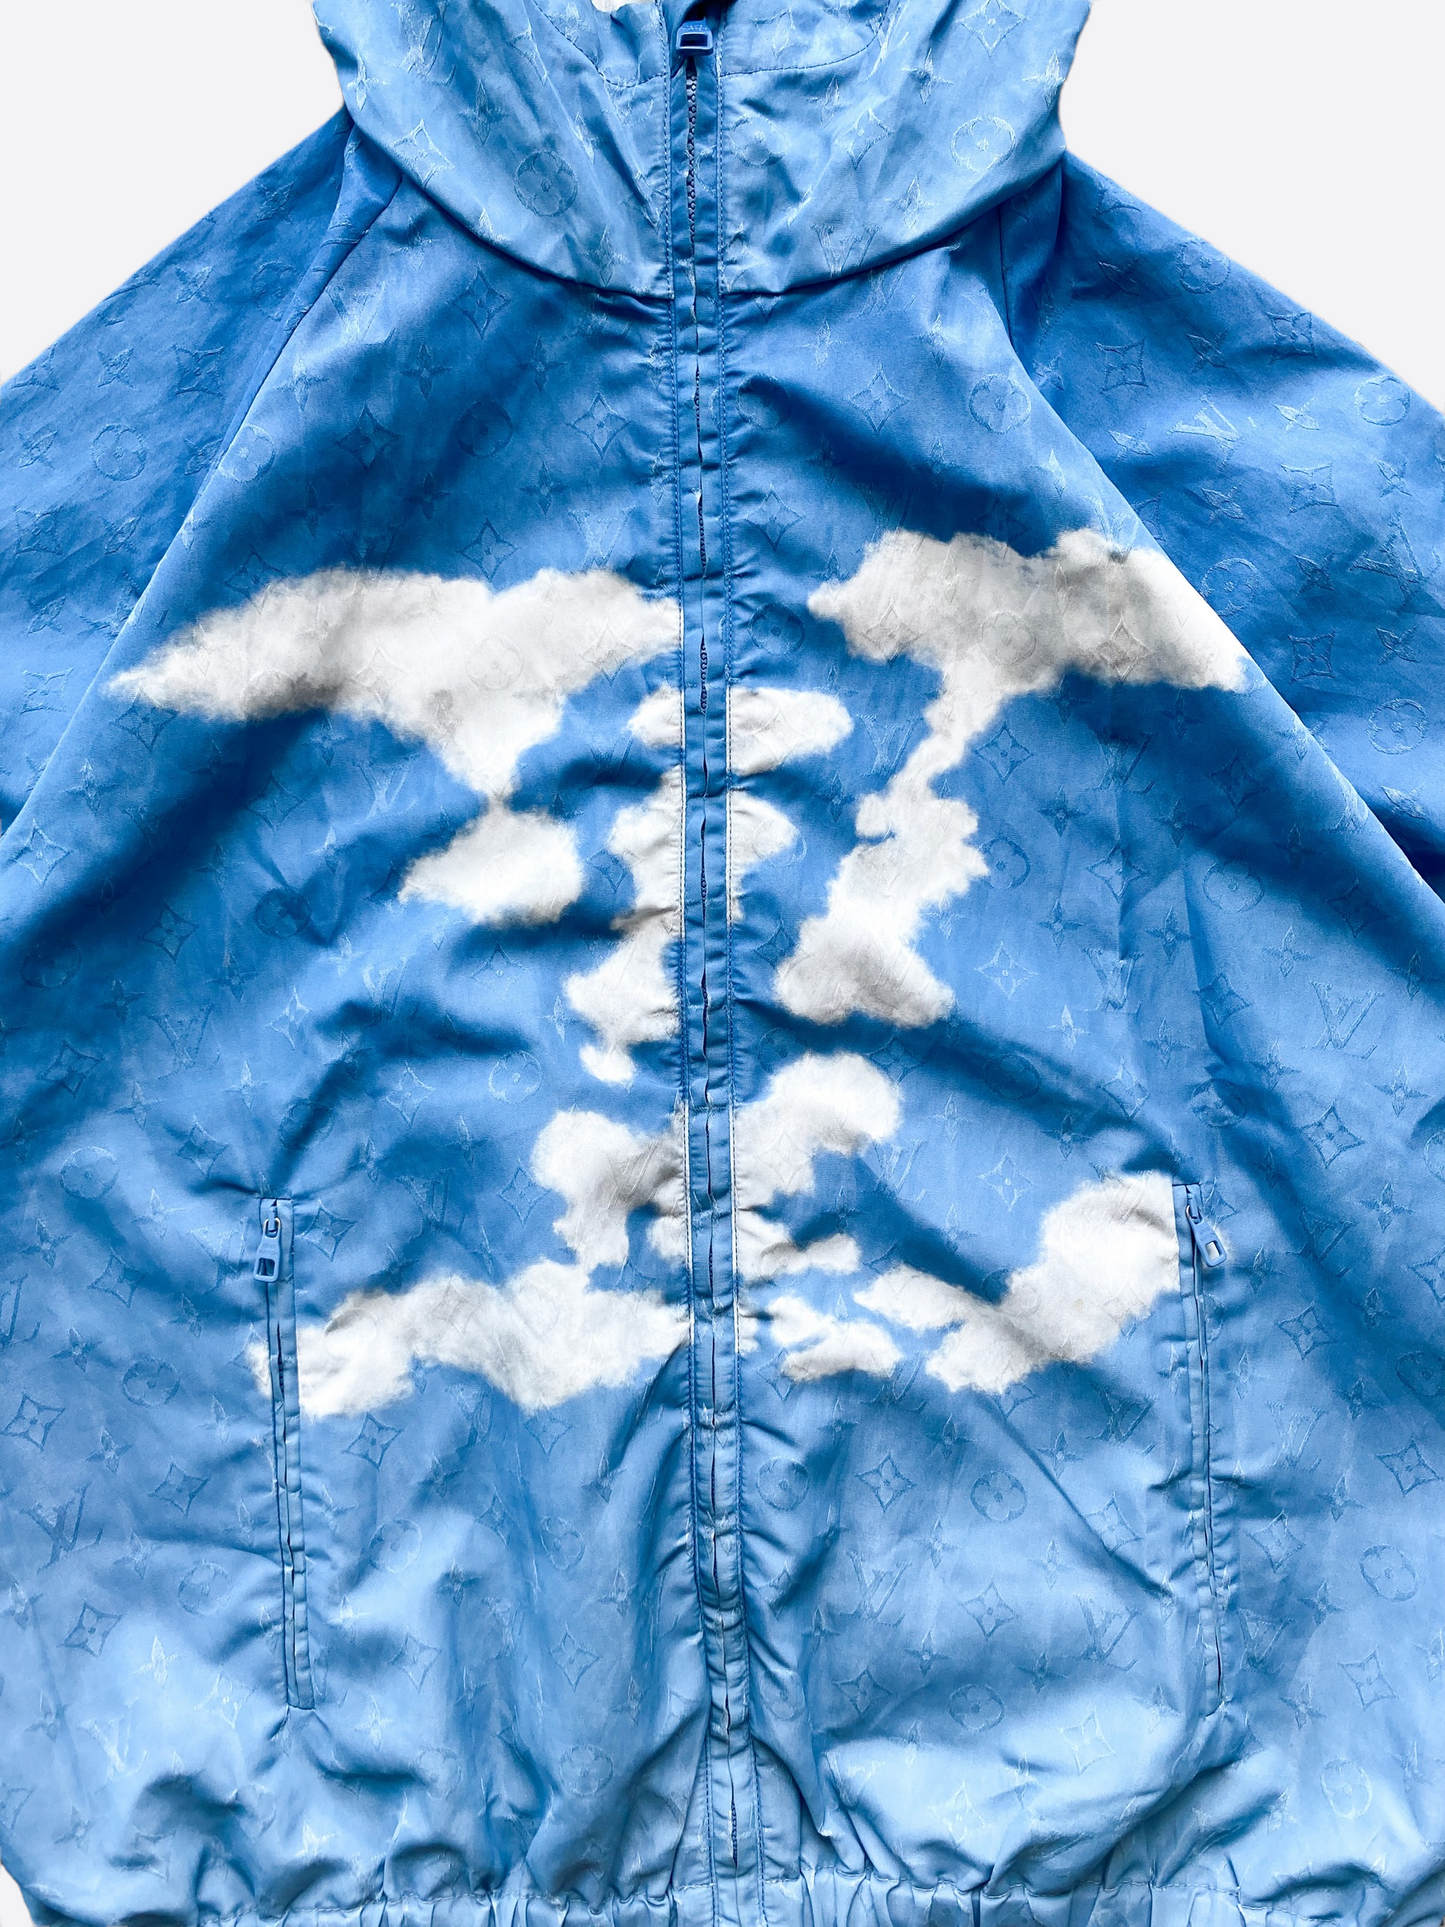 Louis Vuitton Mens Cloud Windbreaker Jacket